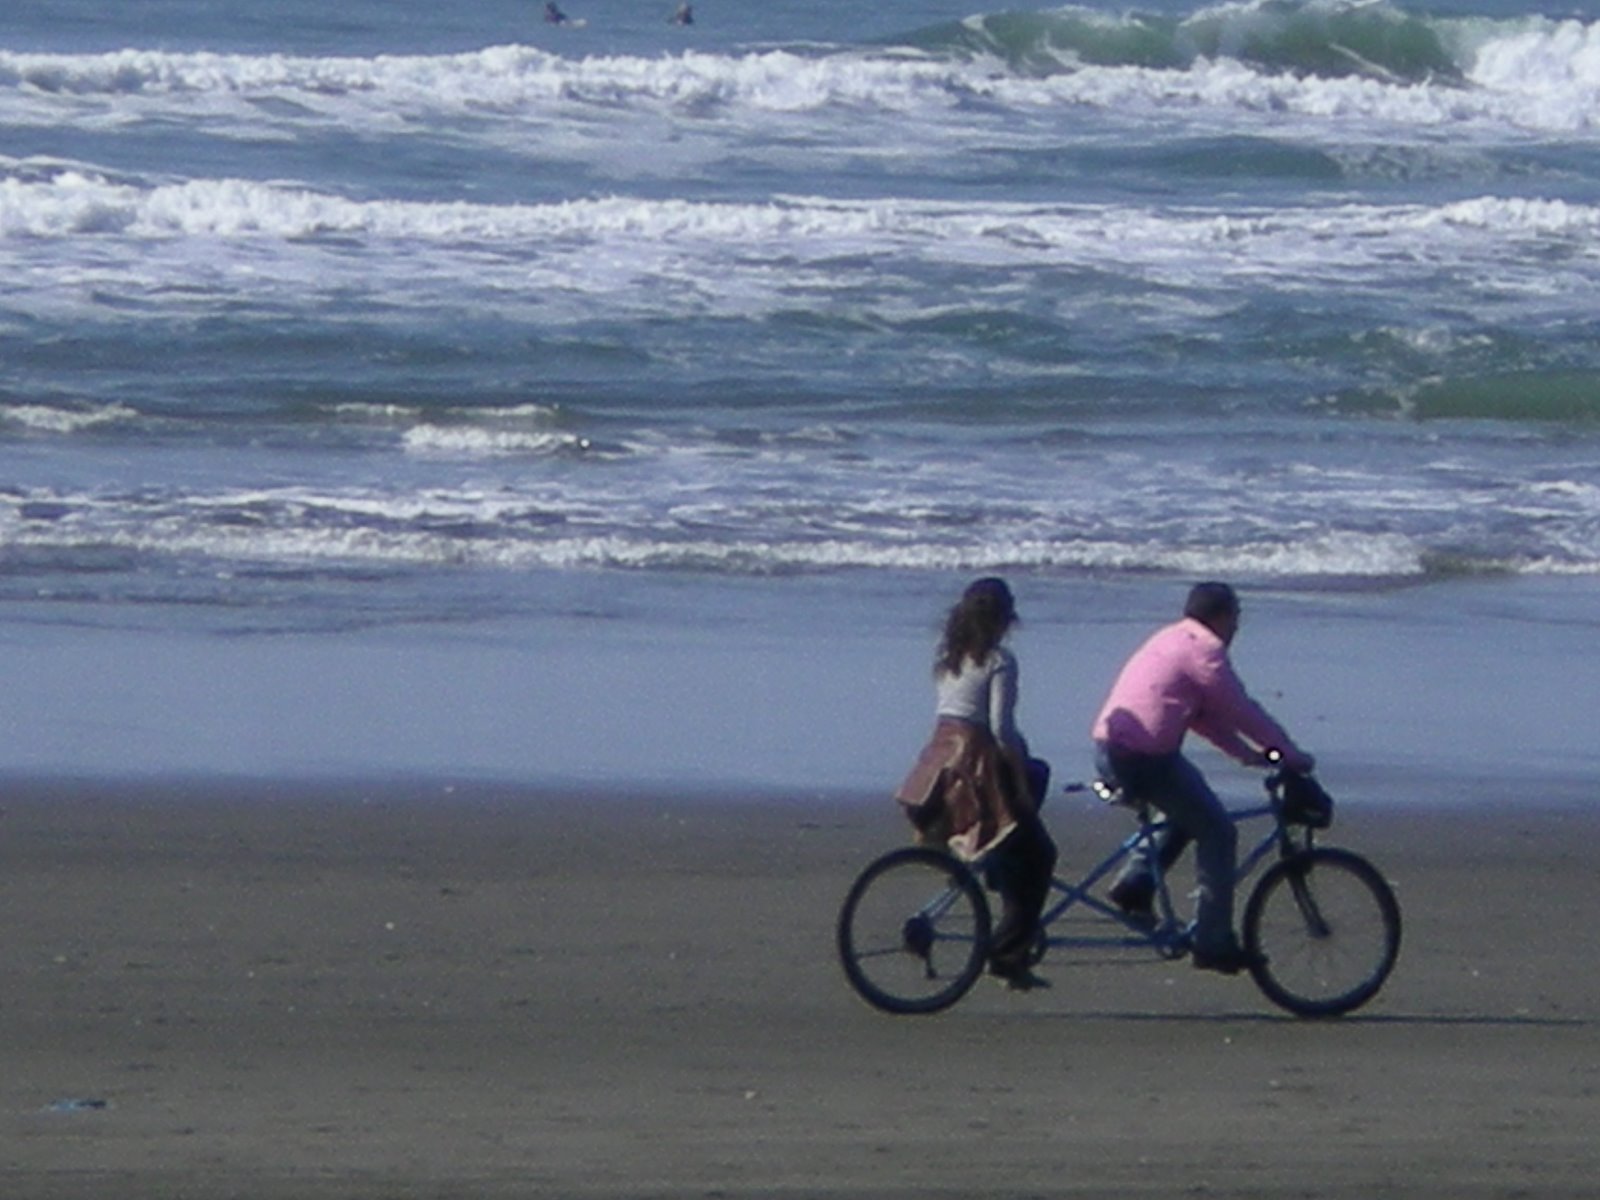 [bike+on+the+beach+3.08.jpg]